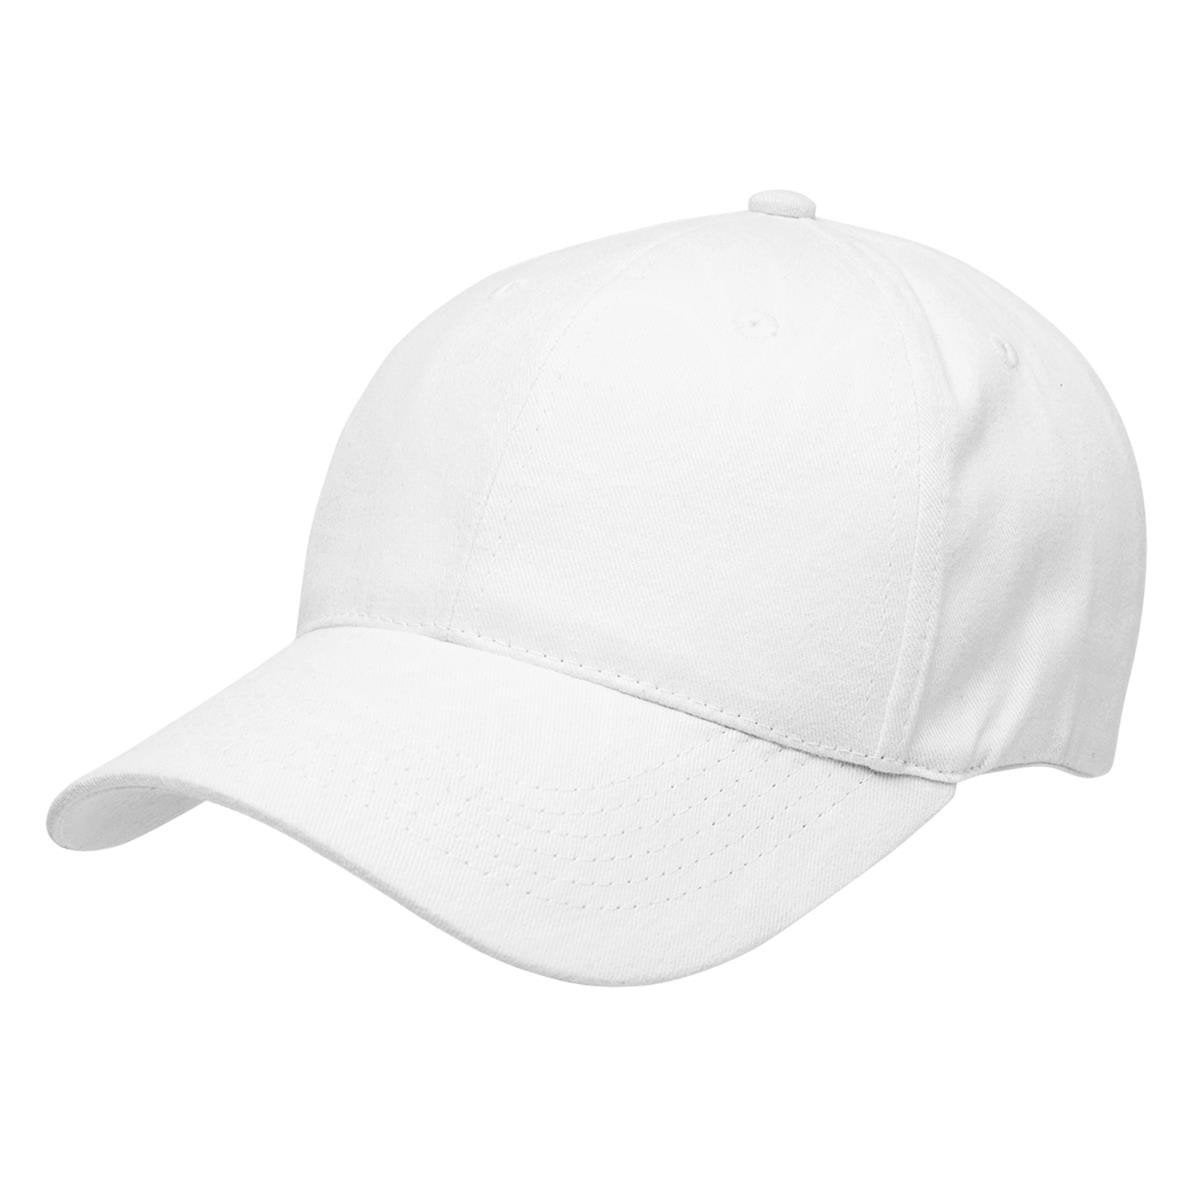 Premium Soft Cotton Cap